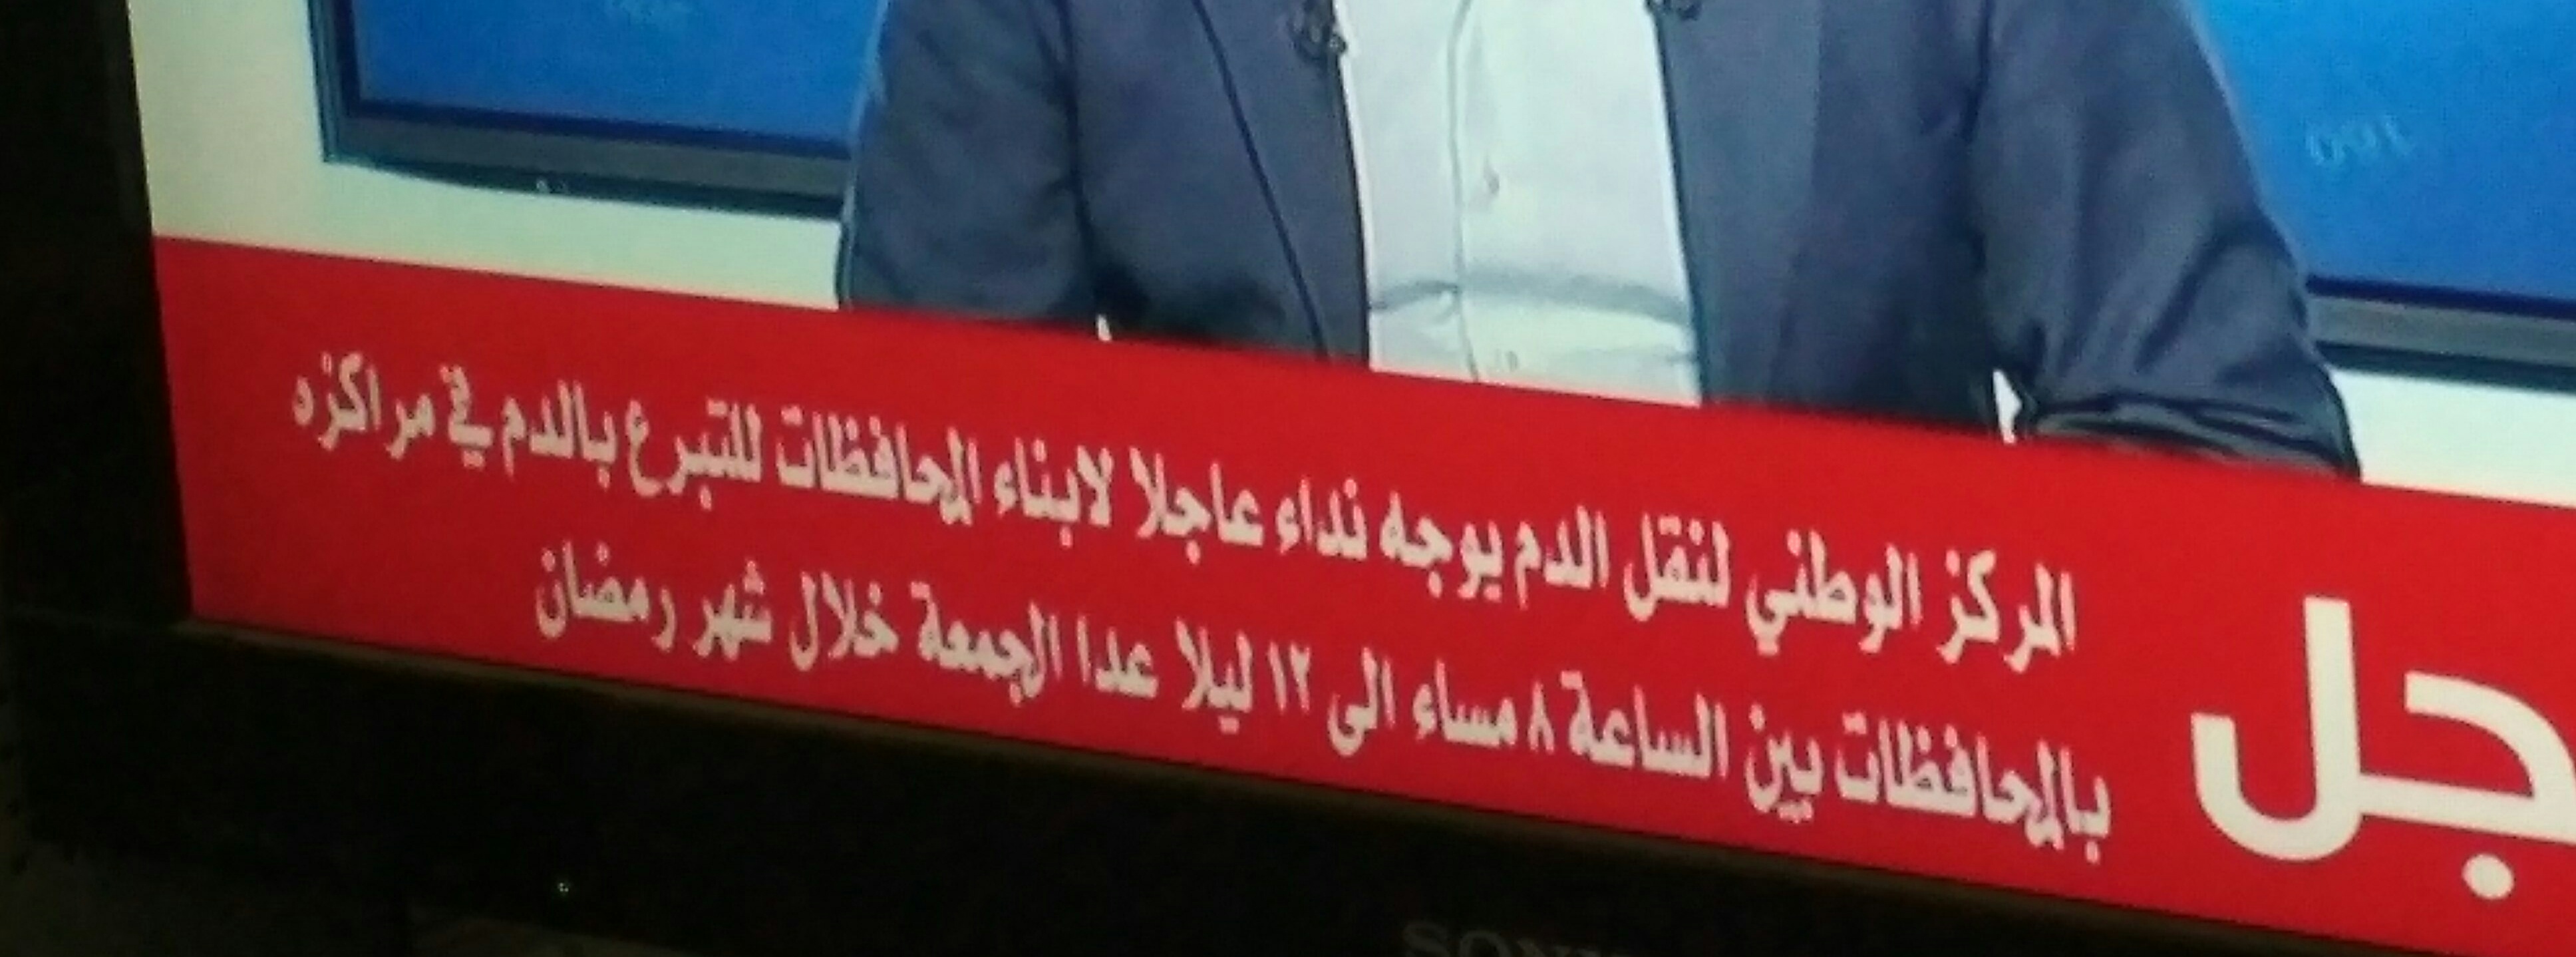 الآن خبر عاجل على القنوات الفضائية اليمنية توجه فيه نداء عاجل لكافة أبناء الشعب اليمني